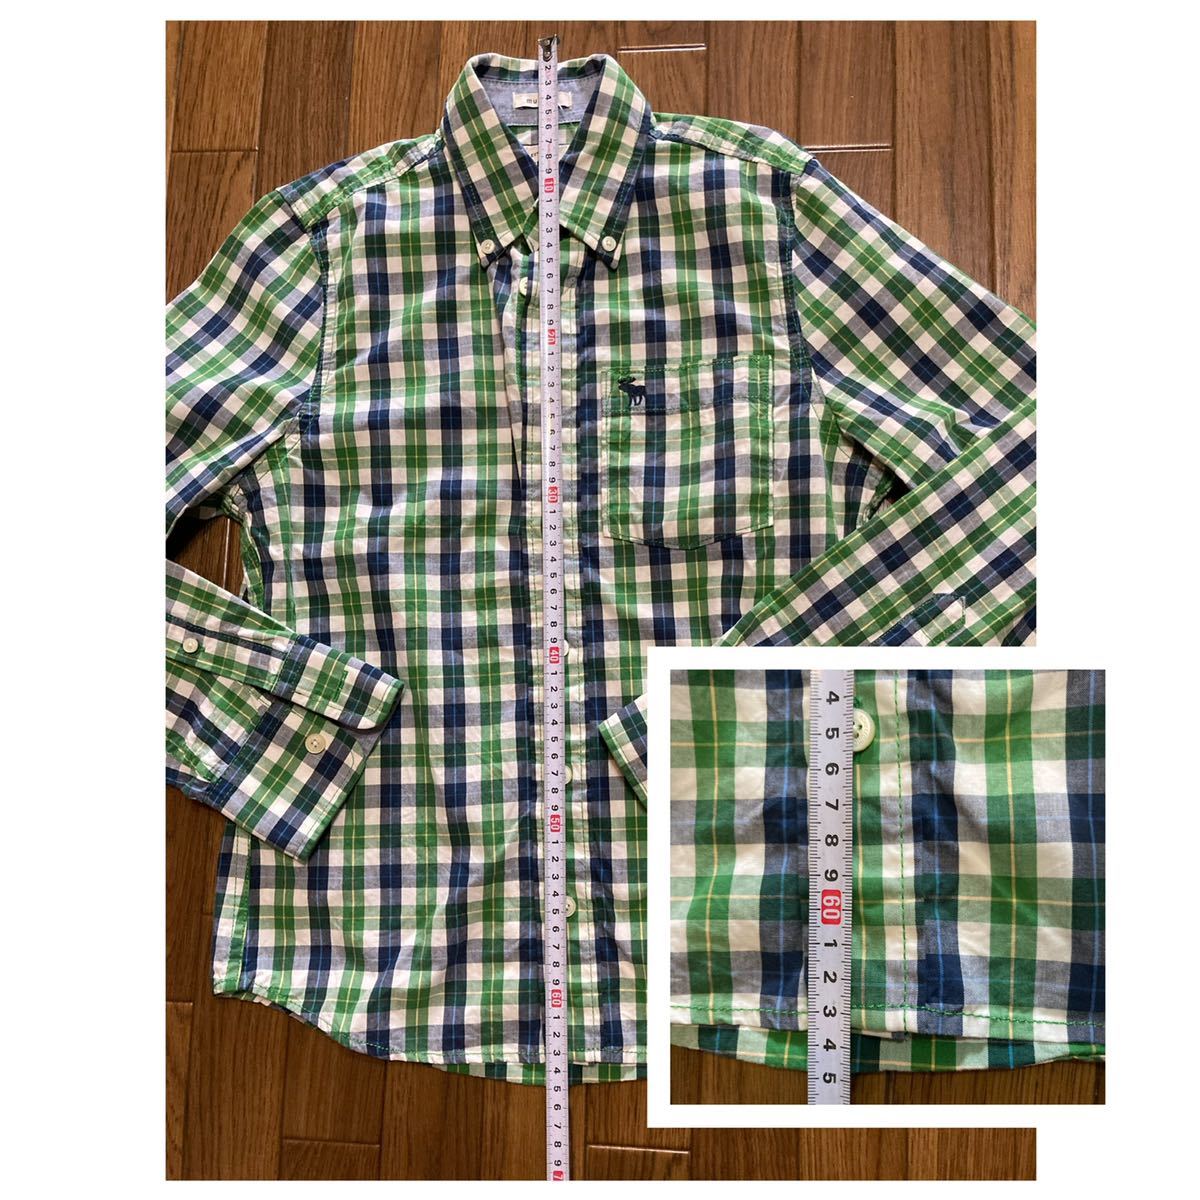  новый товар рубашка с длинным рукавом проверка рубашка Abercrombie & Fitch Kids M Abercrombie & Fitch Abercrombie & Fitch 